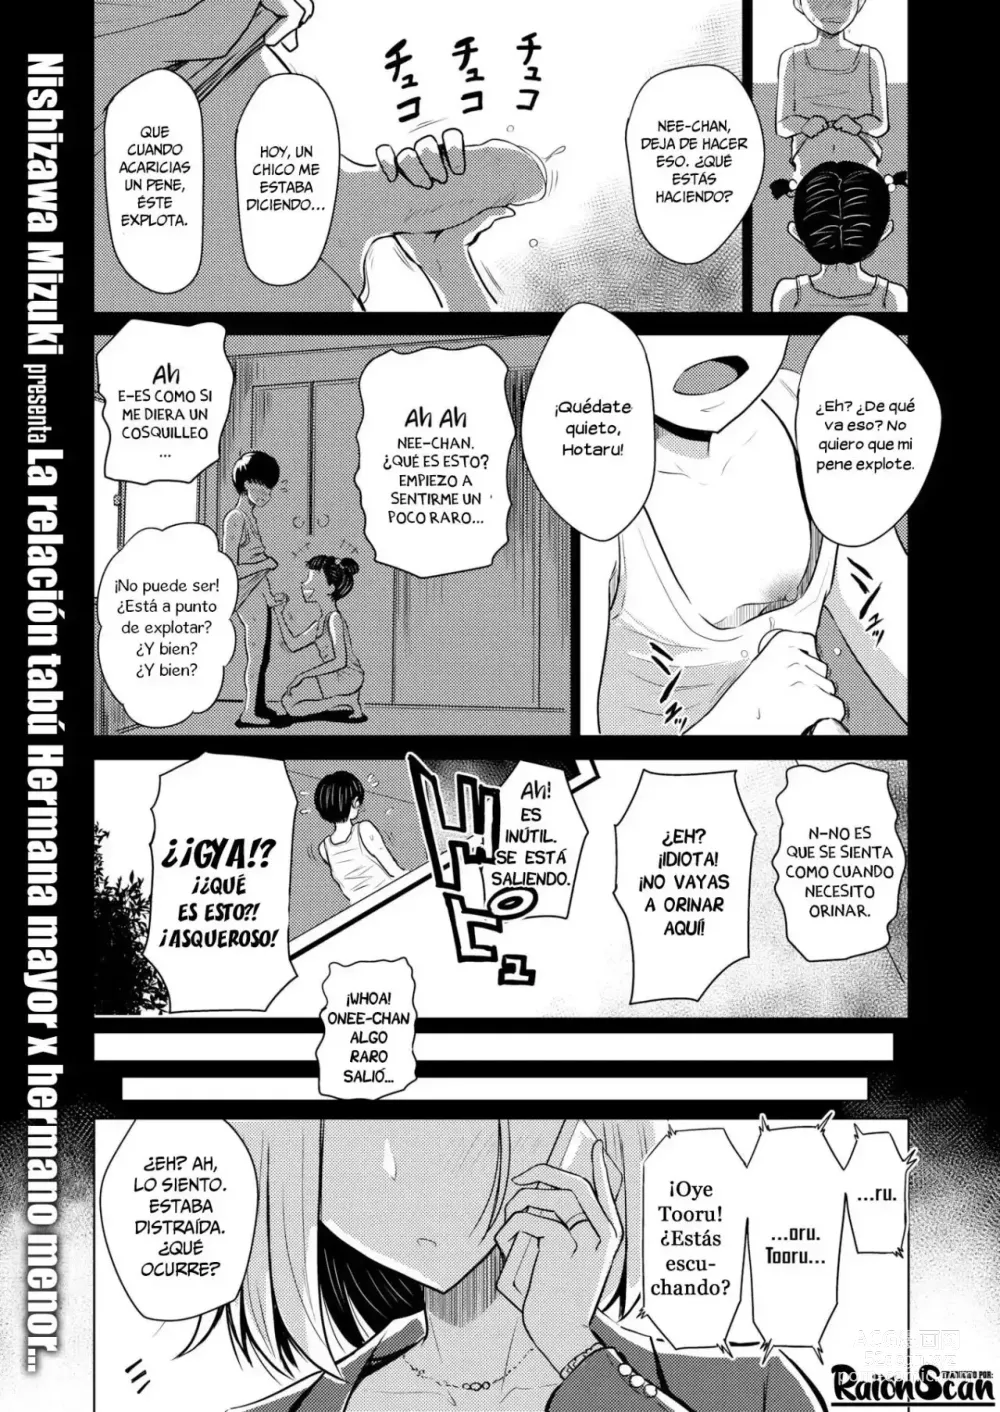 Page 2 of doujinshi Dare ni mo Ienai / No Puedo Decirselo A Nadie